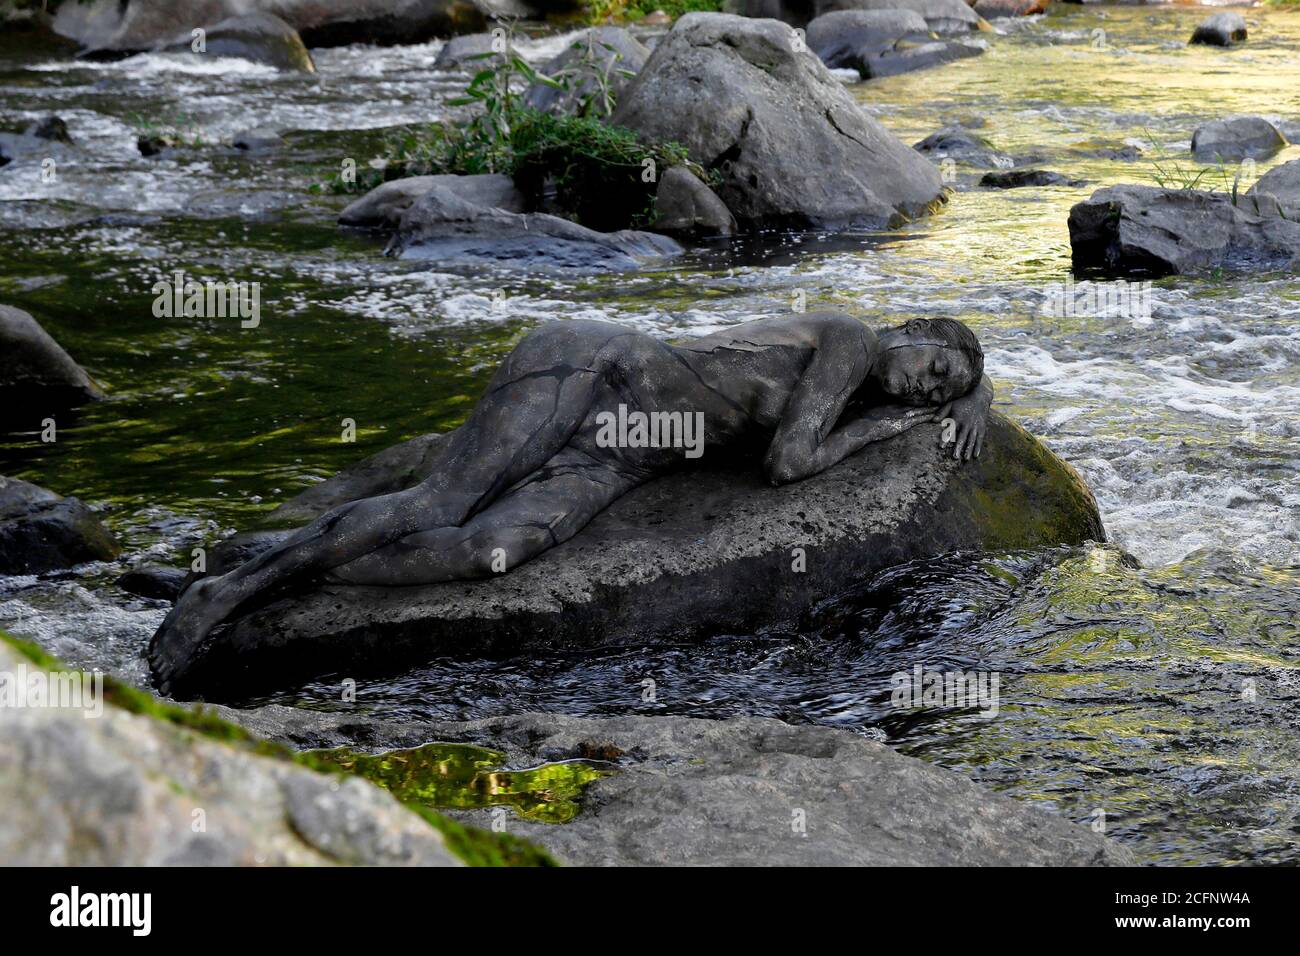 Nature Art: Pierre dans la rivière bodypainting et photoshooting avec le modèle Daniela sur une pierre dans la rivière Chemnitz à Schweizerthal le 6 septembre 2020 - Bodypainting artiste: Joerg Duesterwald Banque D'Images